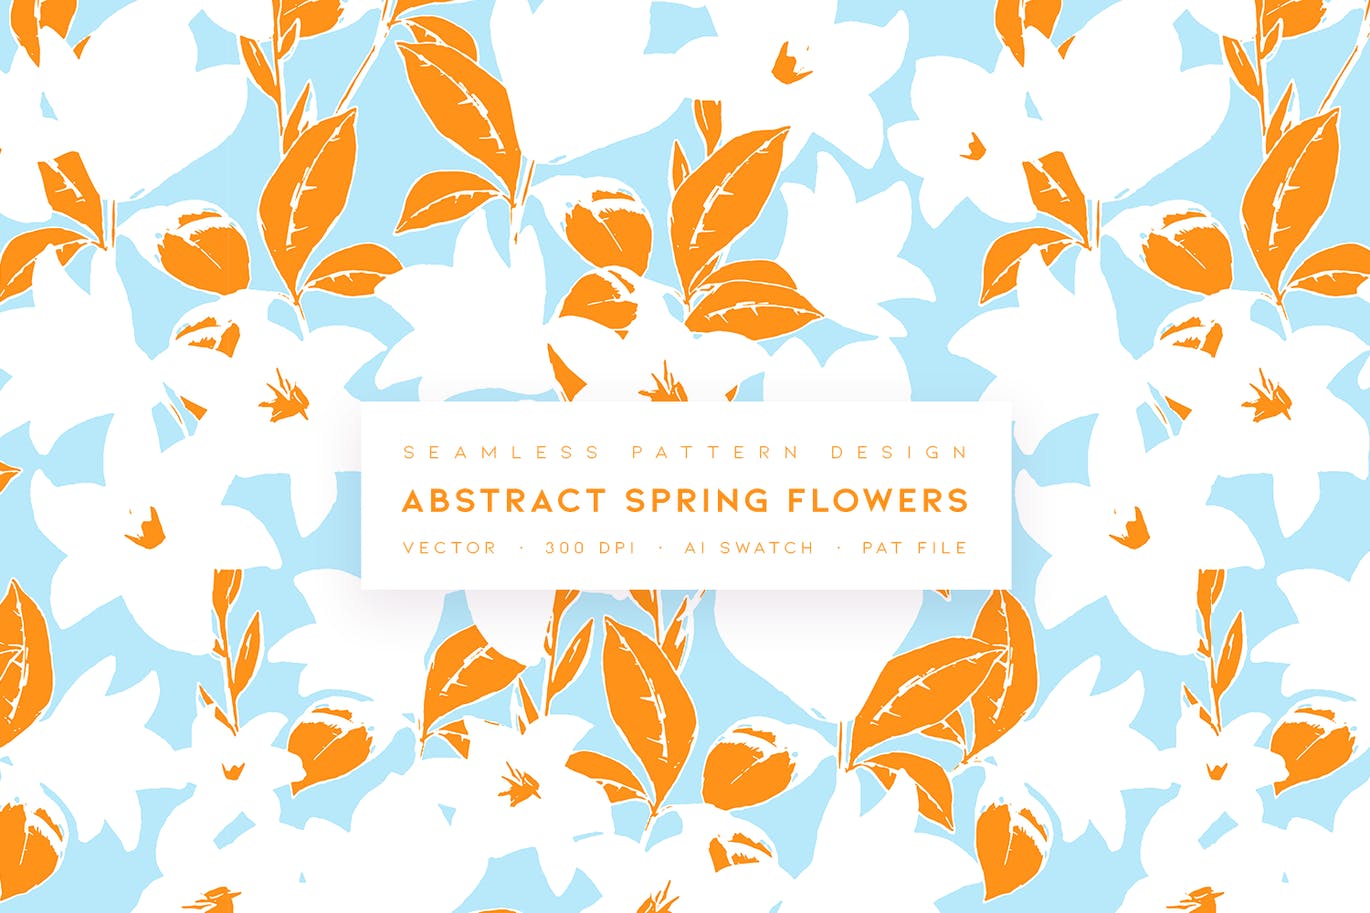 抽象春天花朵无缝图案素材 Abstract Spring Flowers 图片素材 第1张